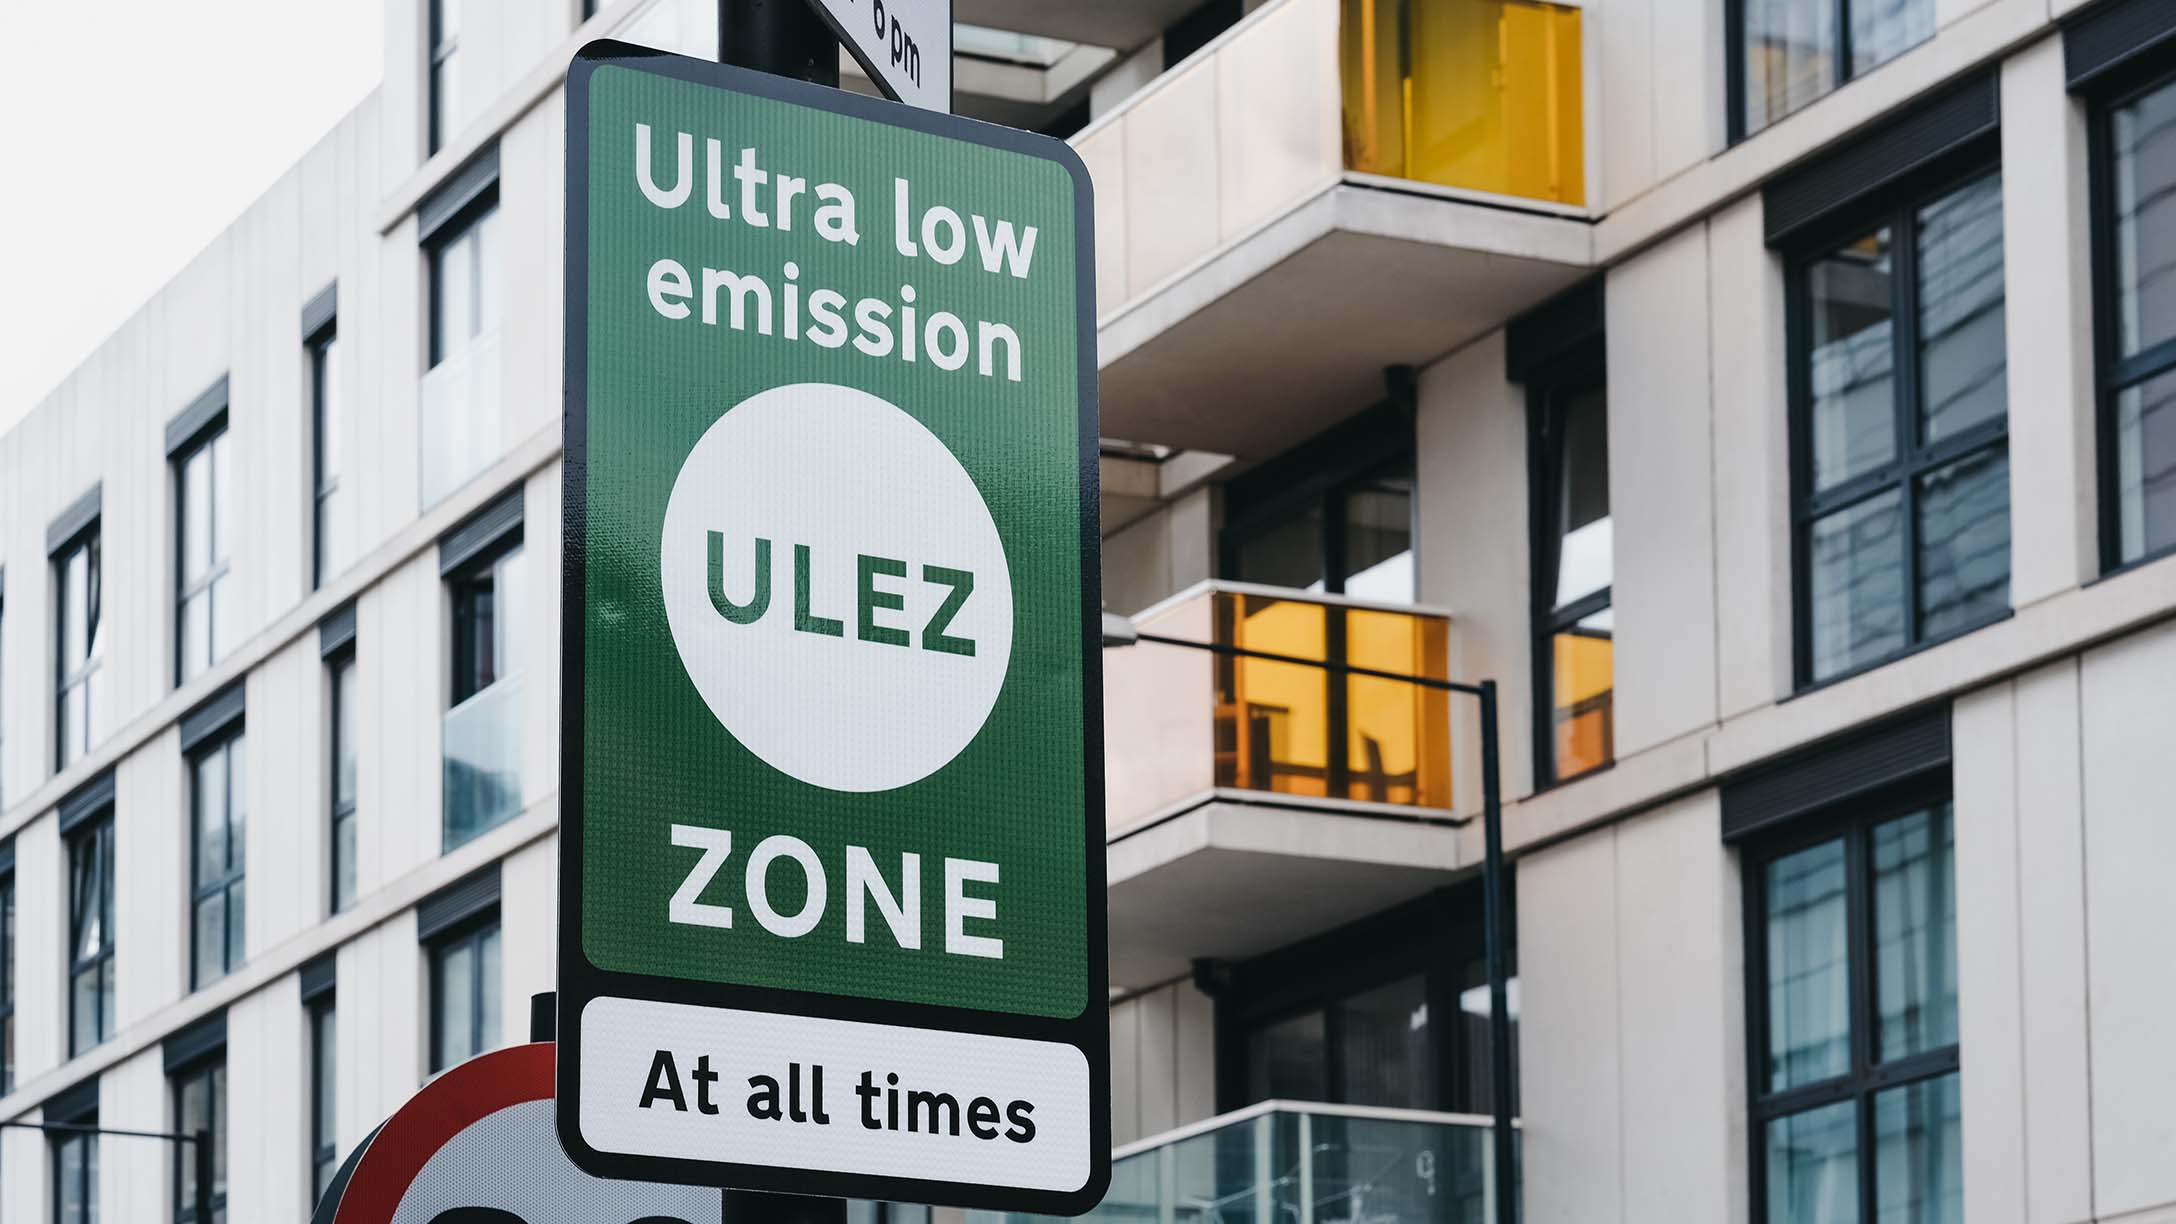 Sinalização na cidade de Londres sobre zona específica para veículos com emissões ultra baixa de poluentes.